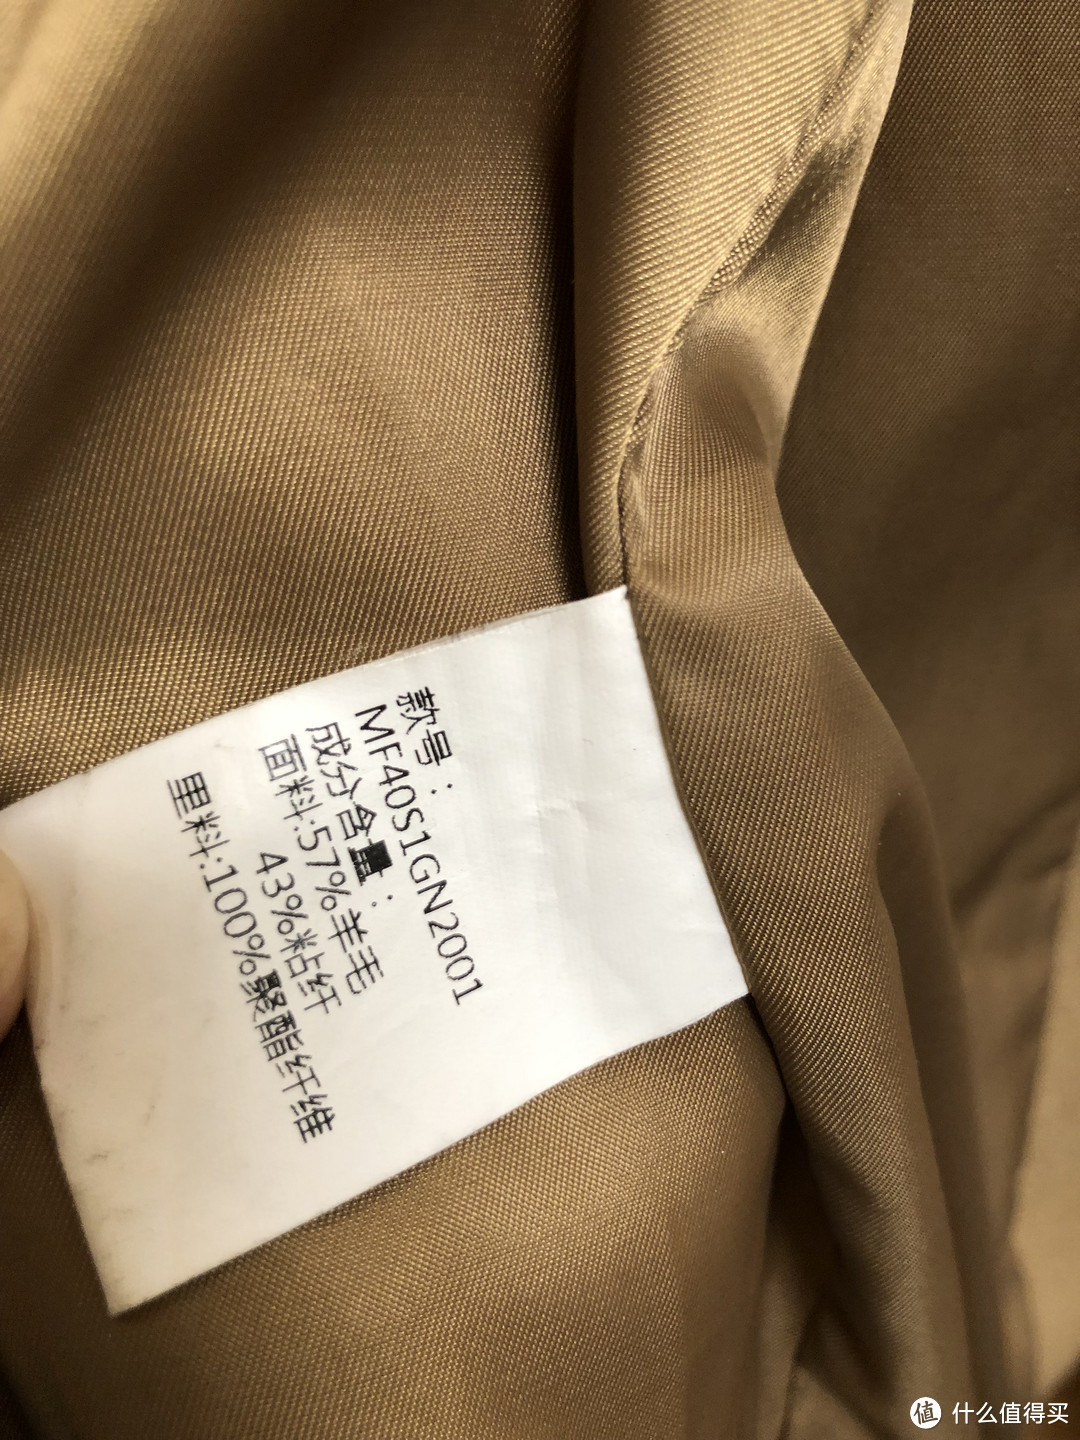 男士羊毛大衣选购指南——五种不同版型的大衣告诉你哪个牌子值得买！